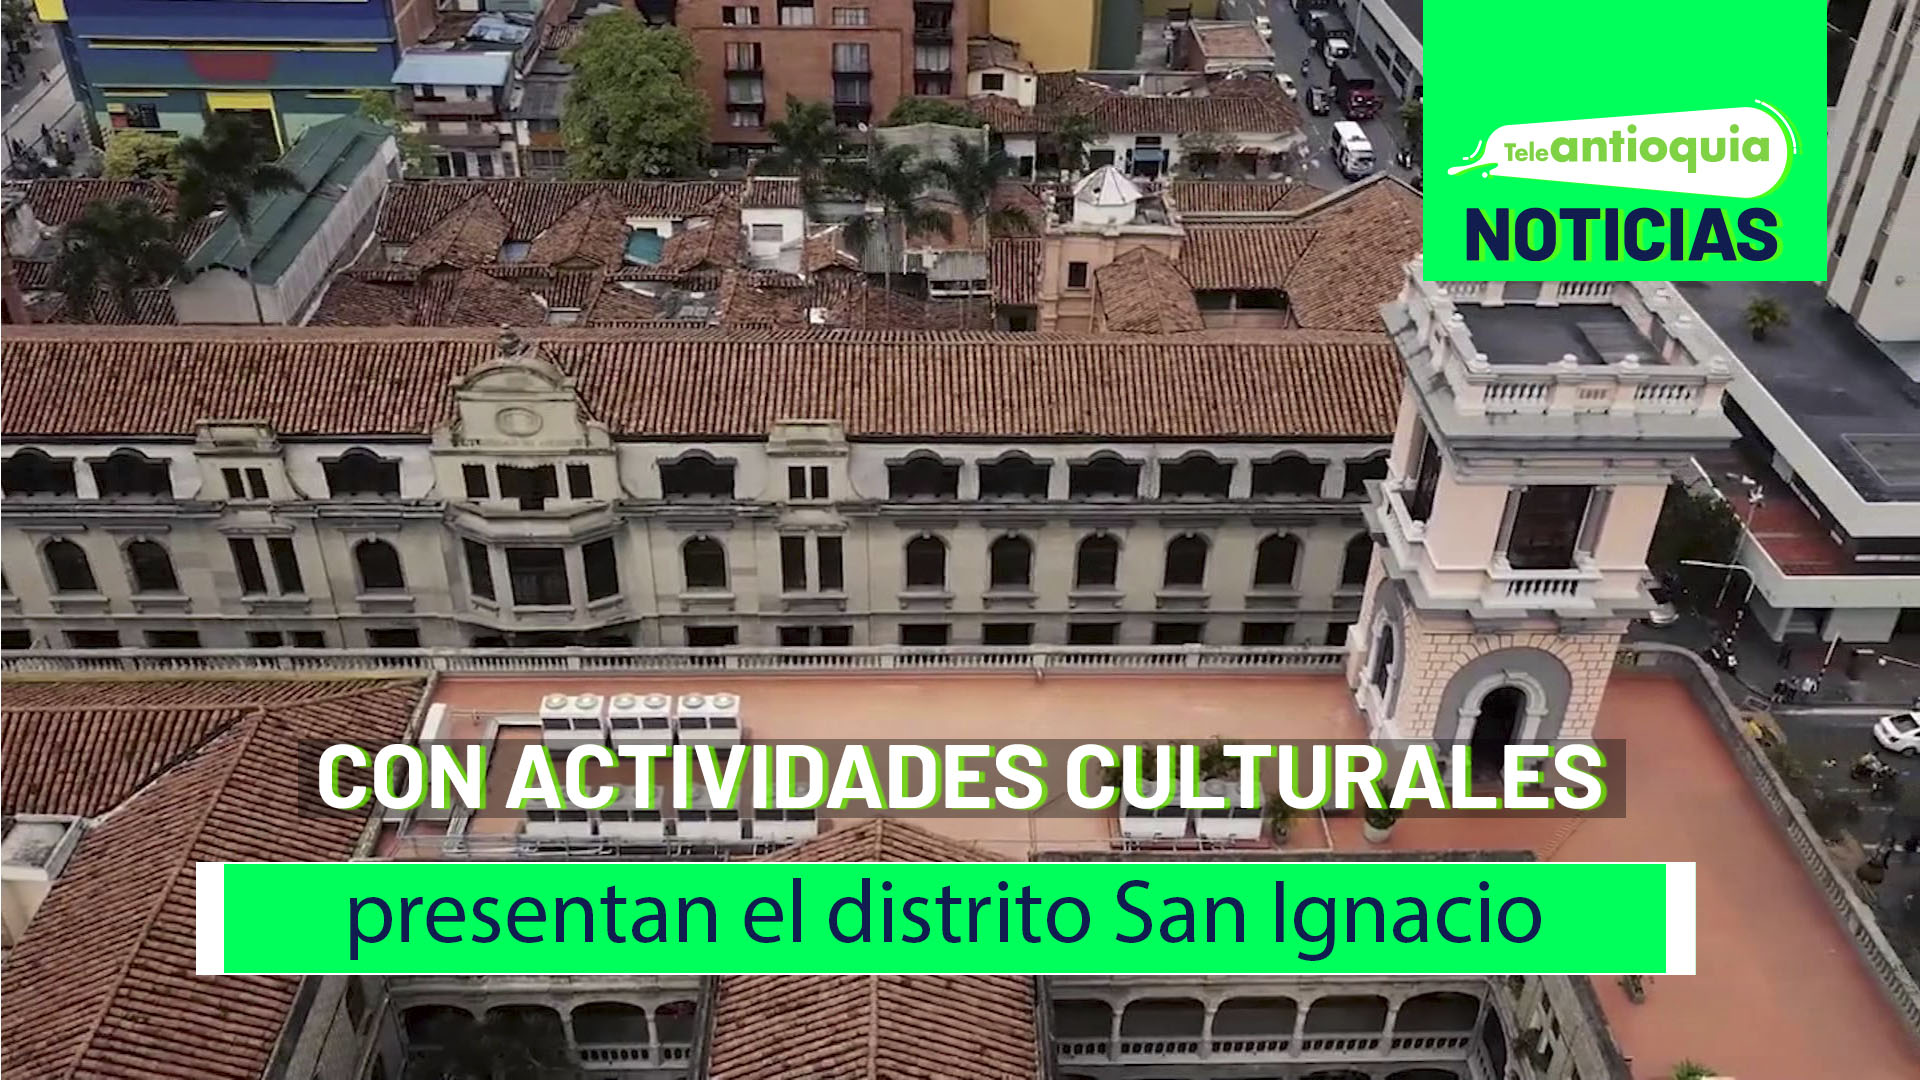 Con actividades culturales presentan el distrito San Ignacio